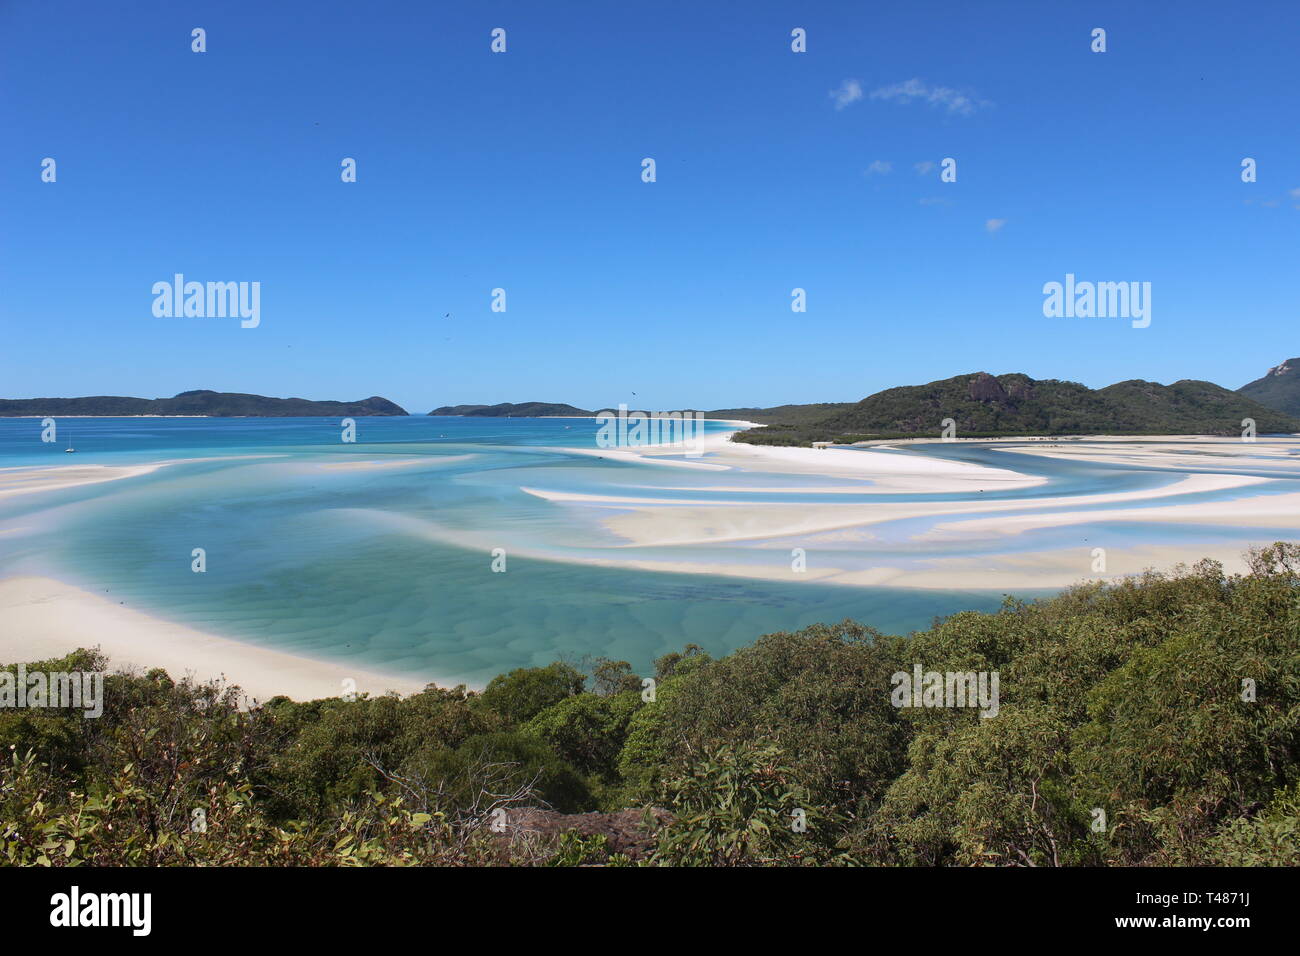 View from viewpoint on Whitehaven Beach, Whitsundays, Australia Stock Photo